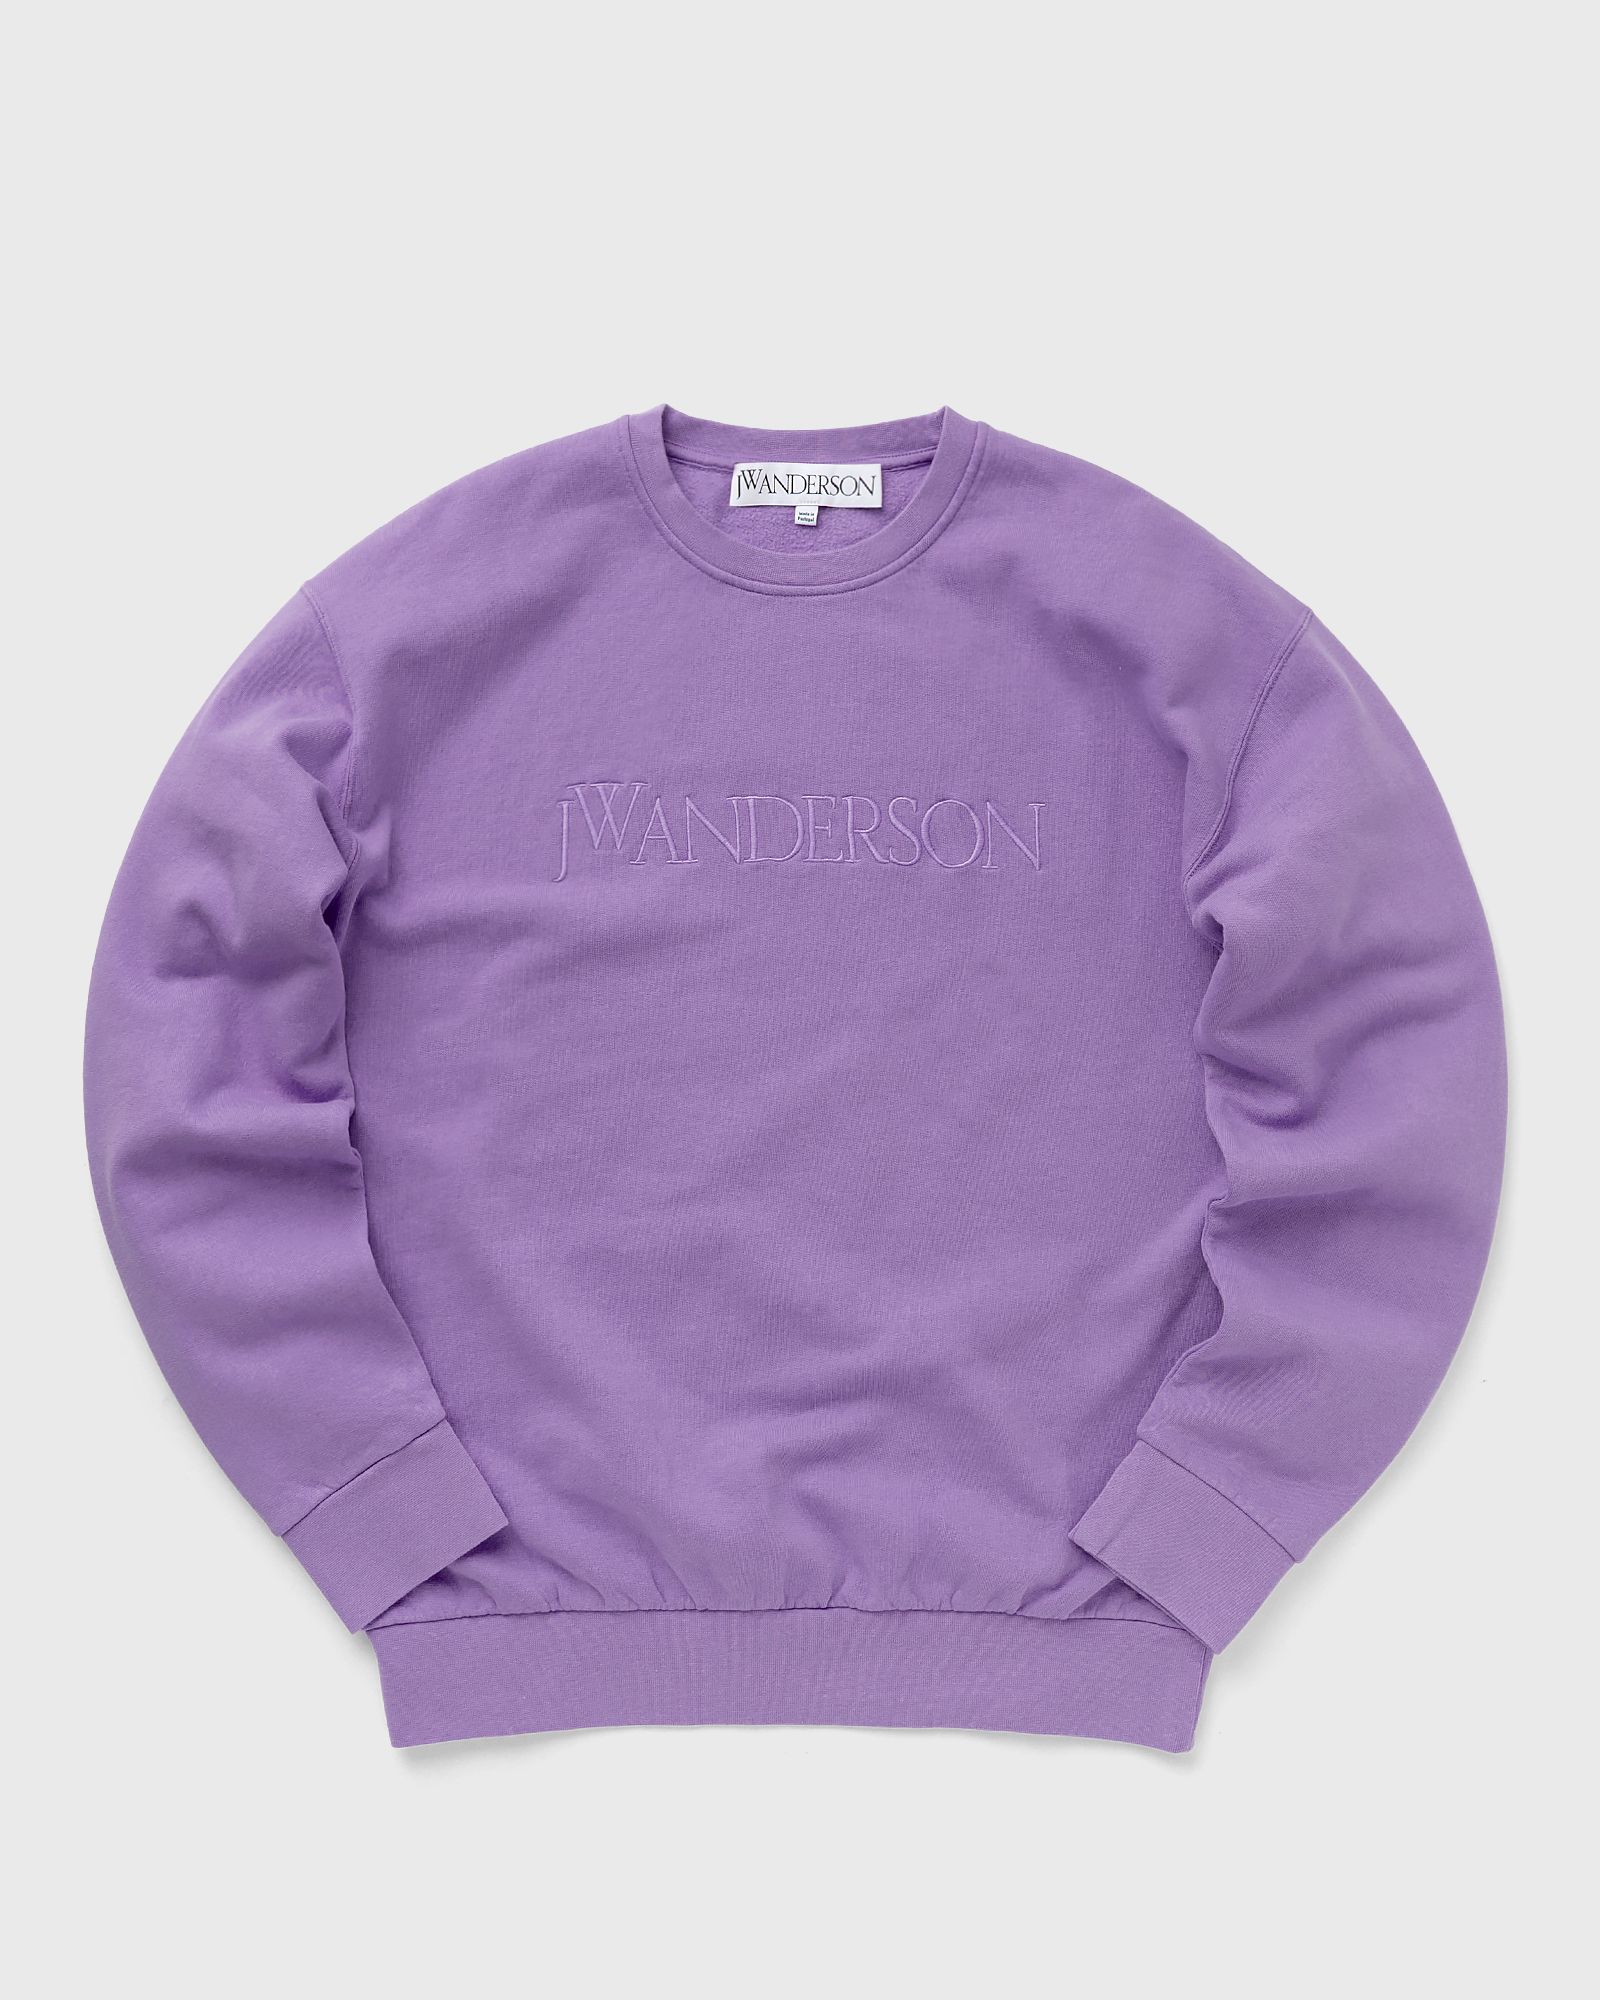 JW Anderson - logo embroidery sweatshirt men sweatshirts purple in größe:xl